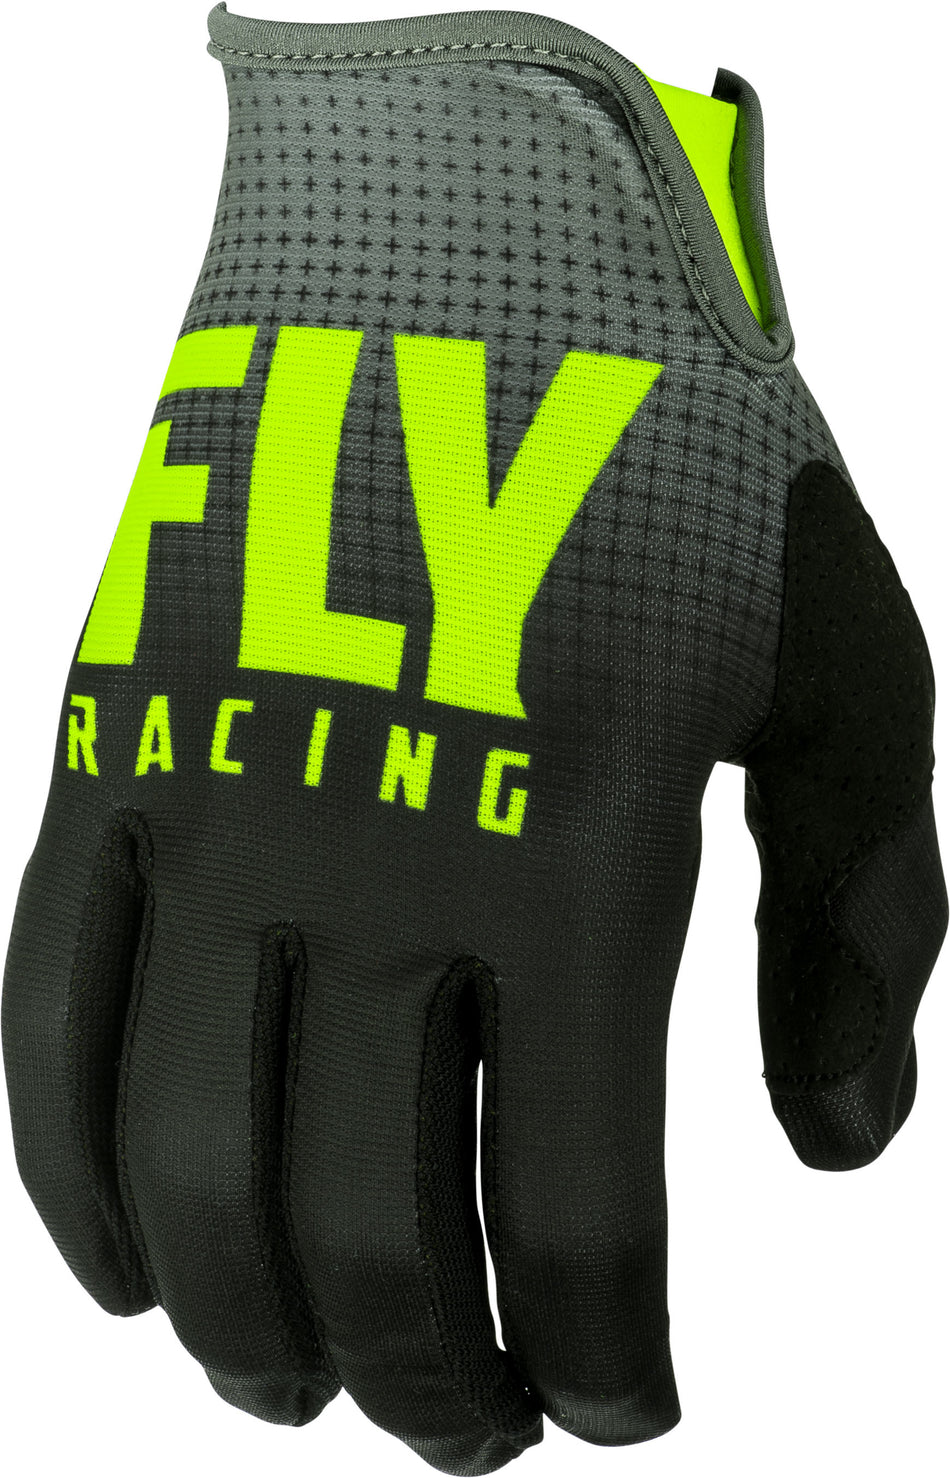 FLY RACING Lite Gloves Black/Hi-Vis Sz 07 372-01007